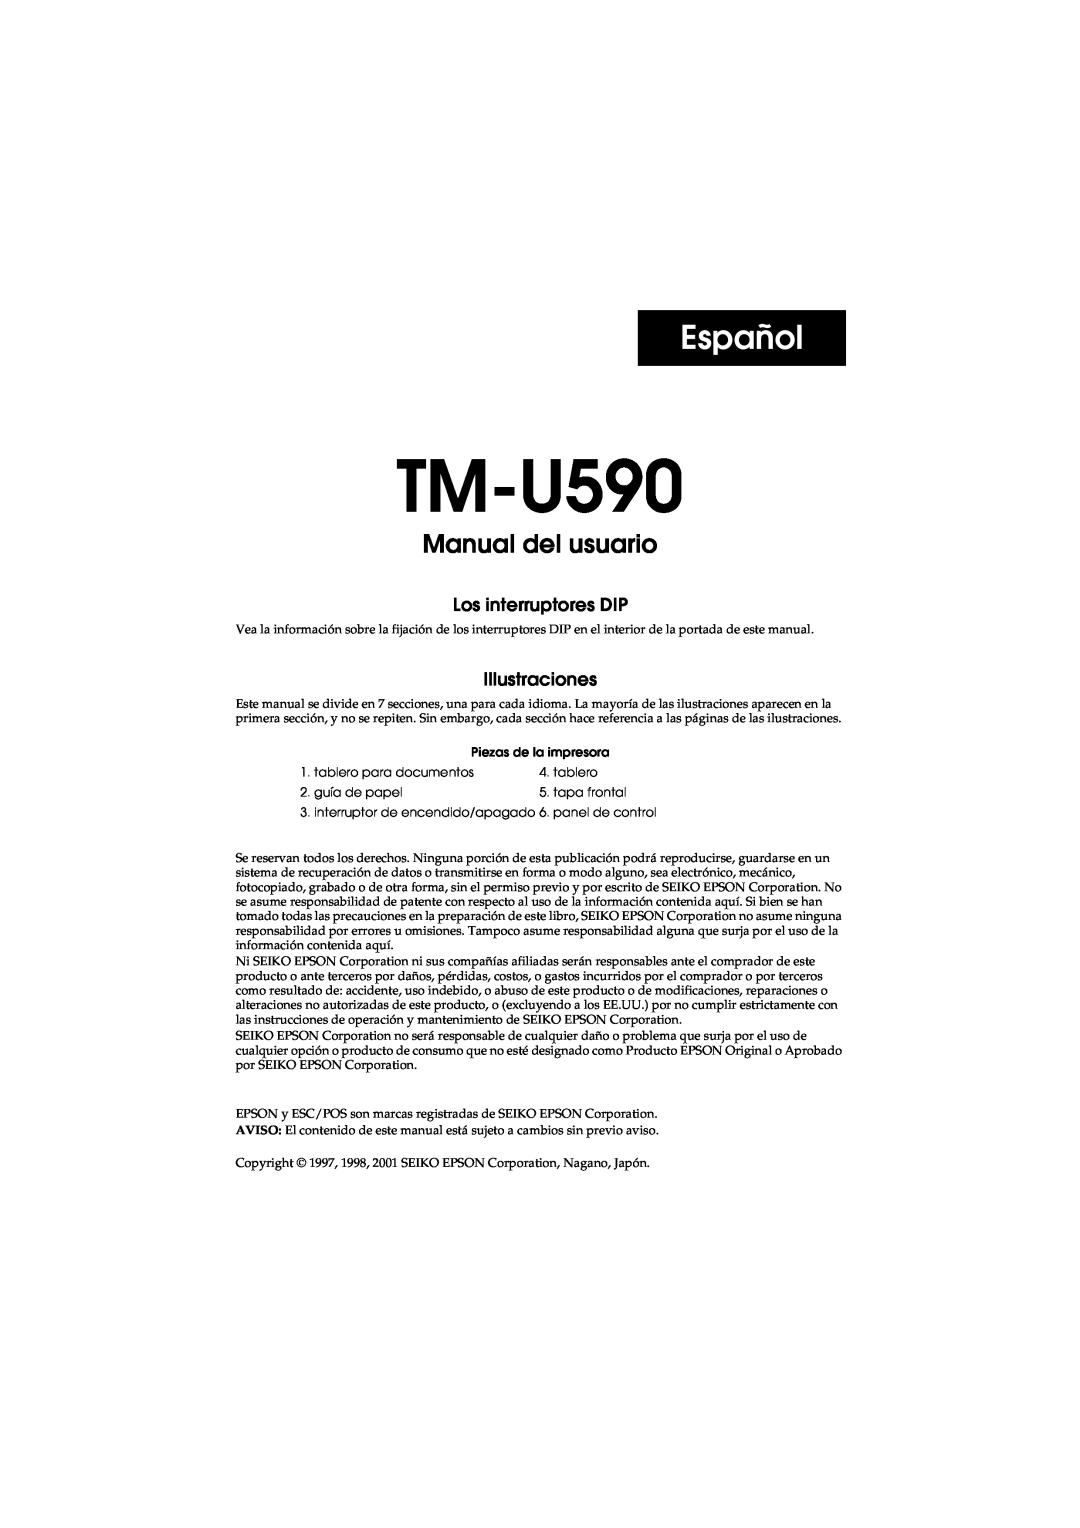 FARGO electronic user manual Español, Manual del usuario del TM-U590, Los interruptores DIP, Illustraciones 